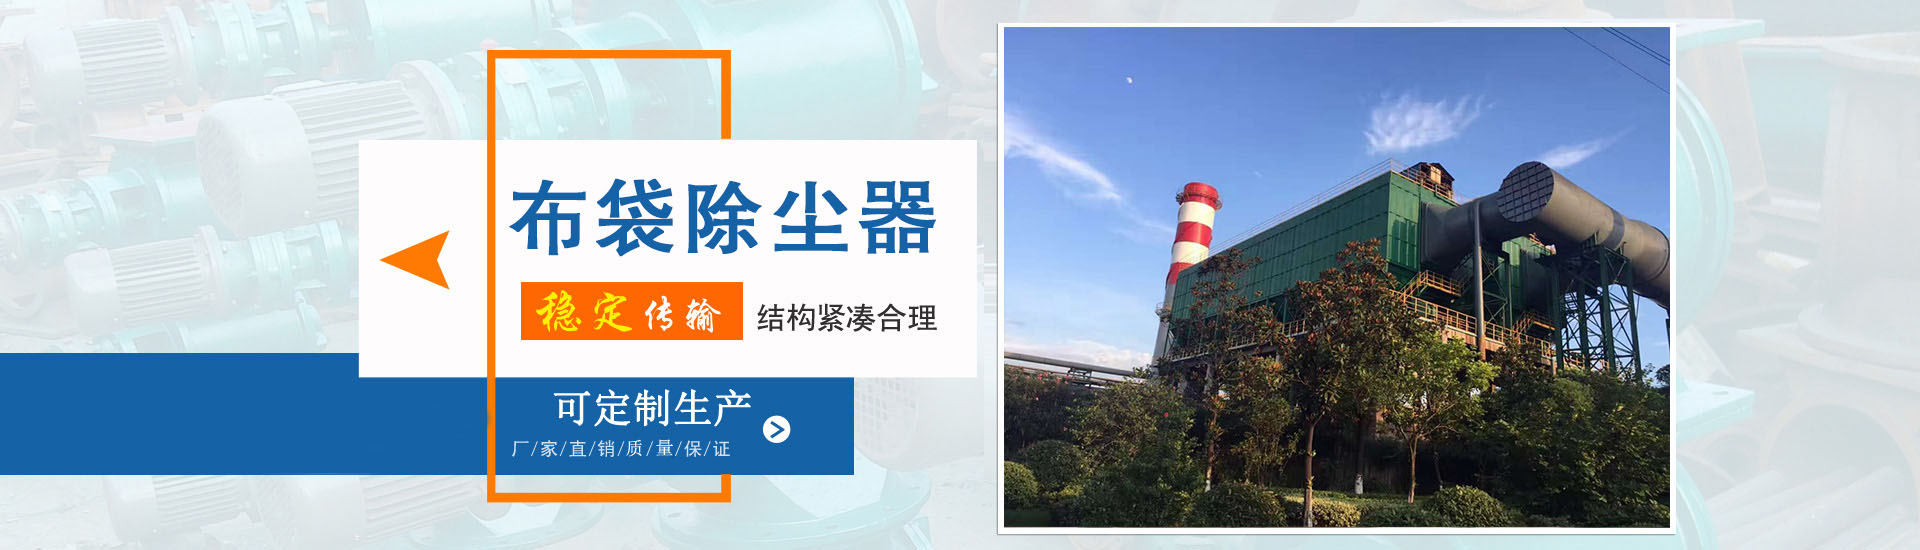 【单机除尘器】、上海本地【单机除尘器】、上海、上海【单机除尘器】